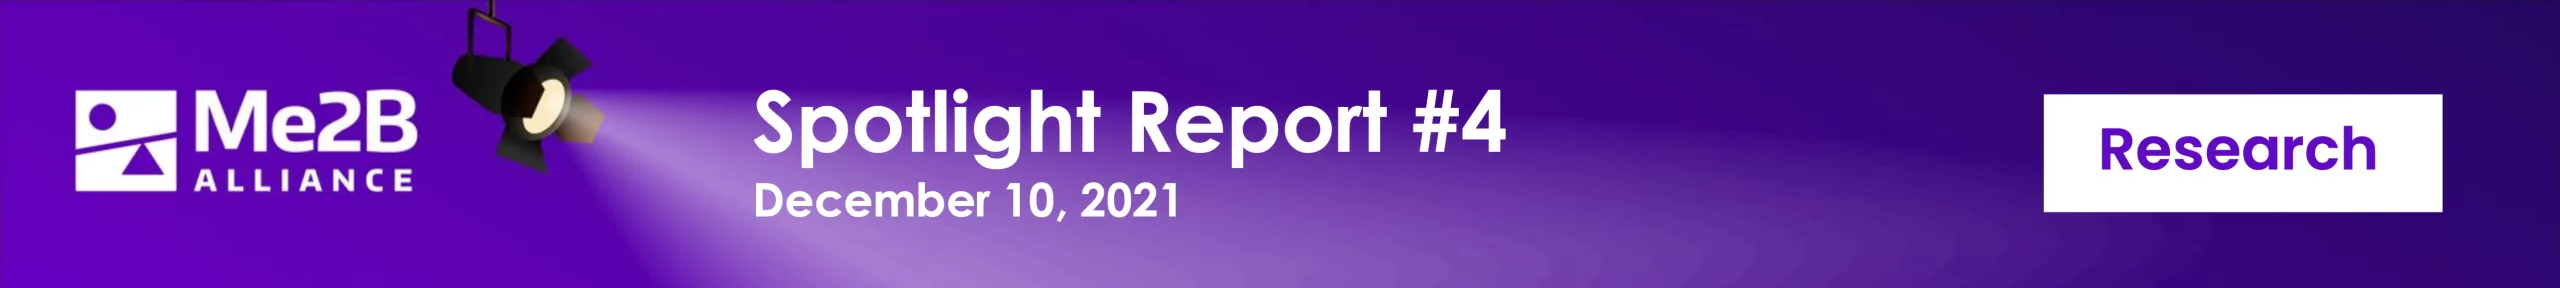 Spotlight Report #4, December 10, 2021 header banner